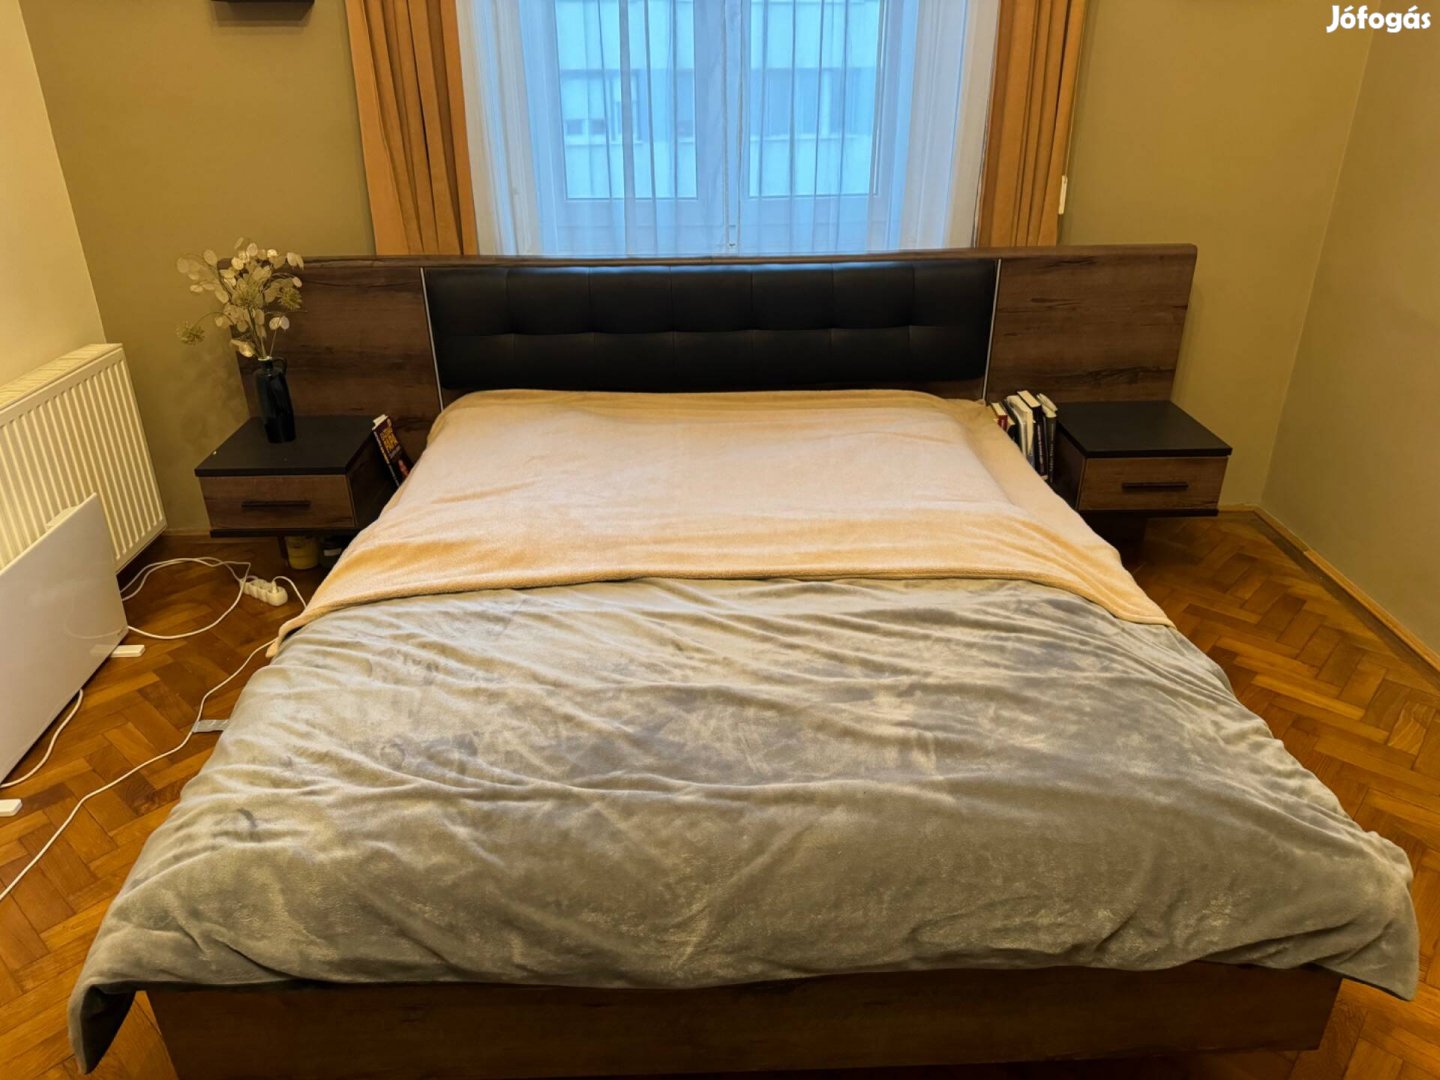 Eladó hibátlan állapotú ágy a Mömaxból, matrac nélkül